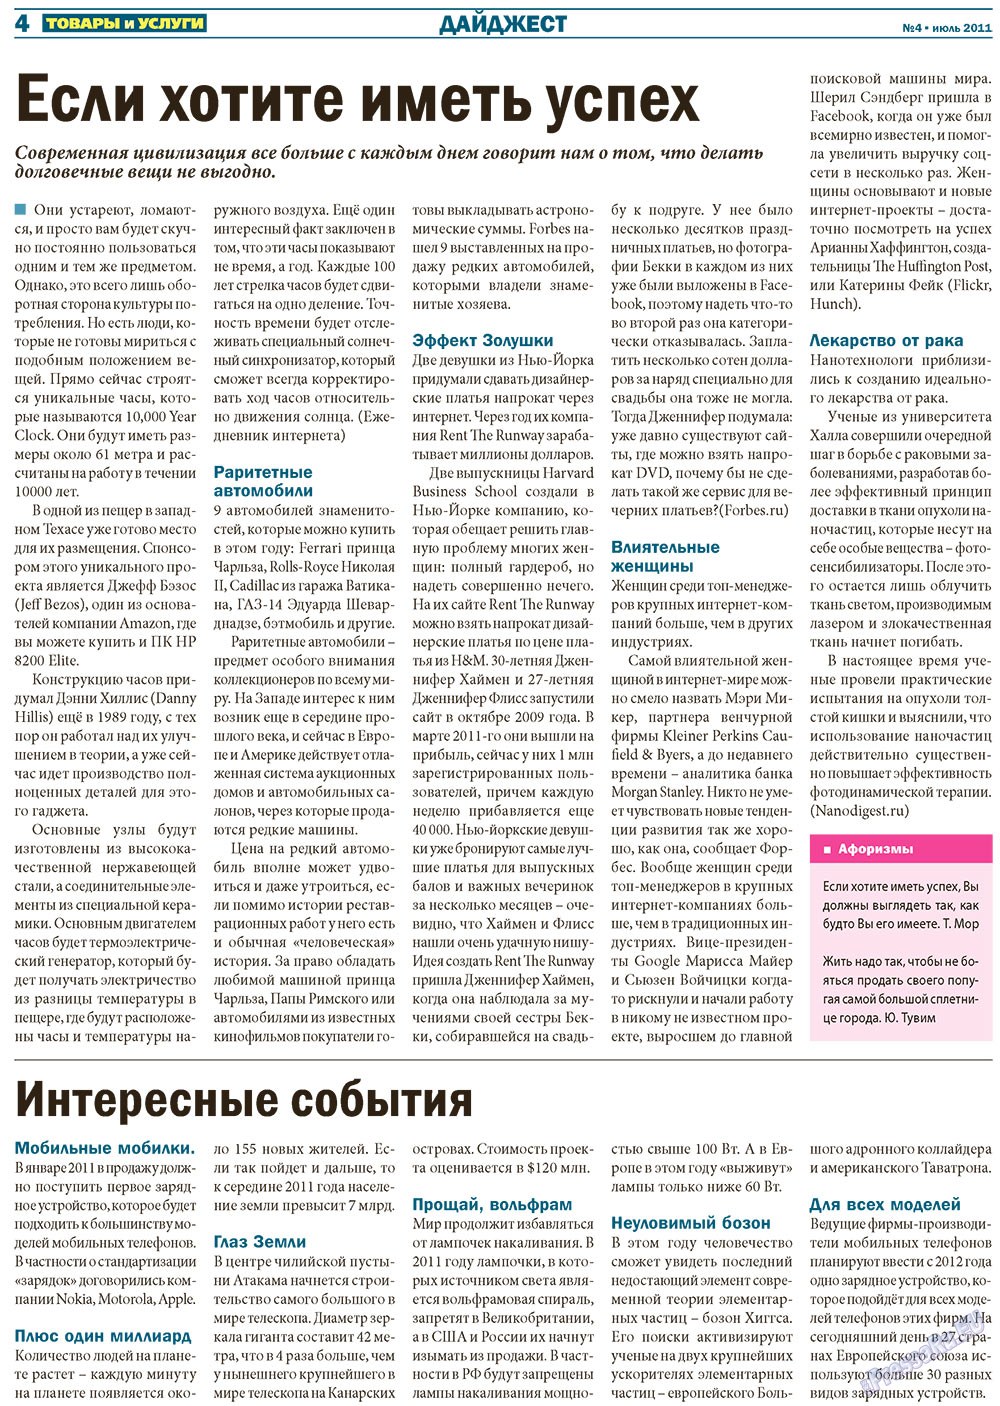 Товары и услуги (газета). 2011 год, номер 4, стр. 4